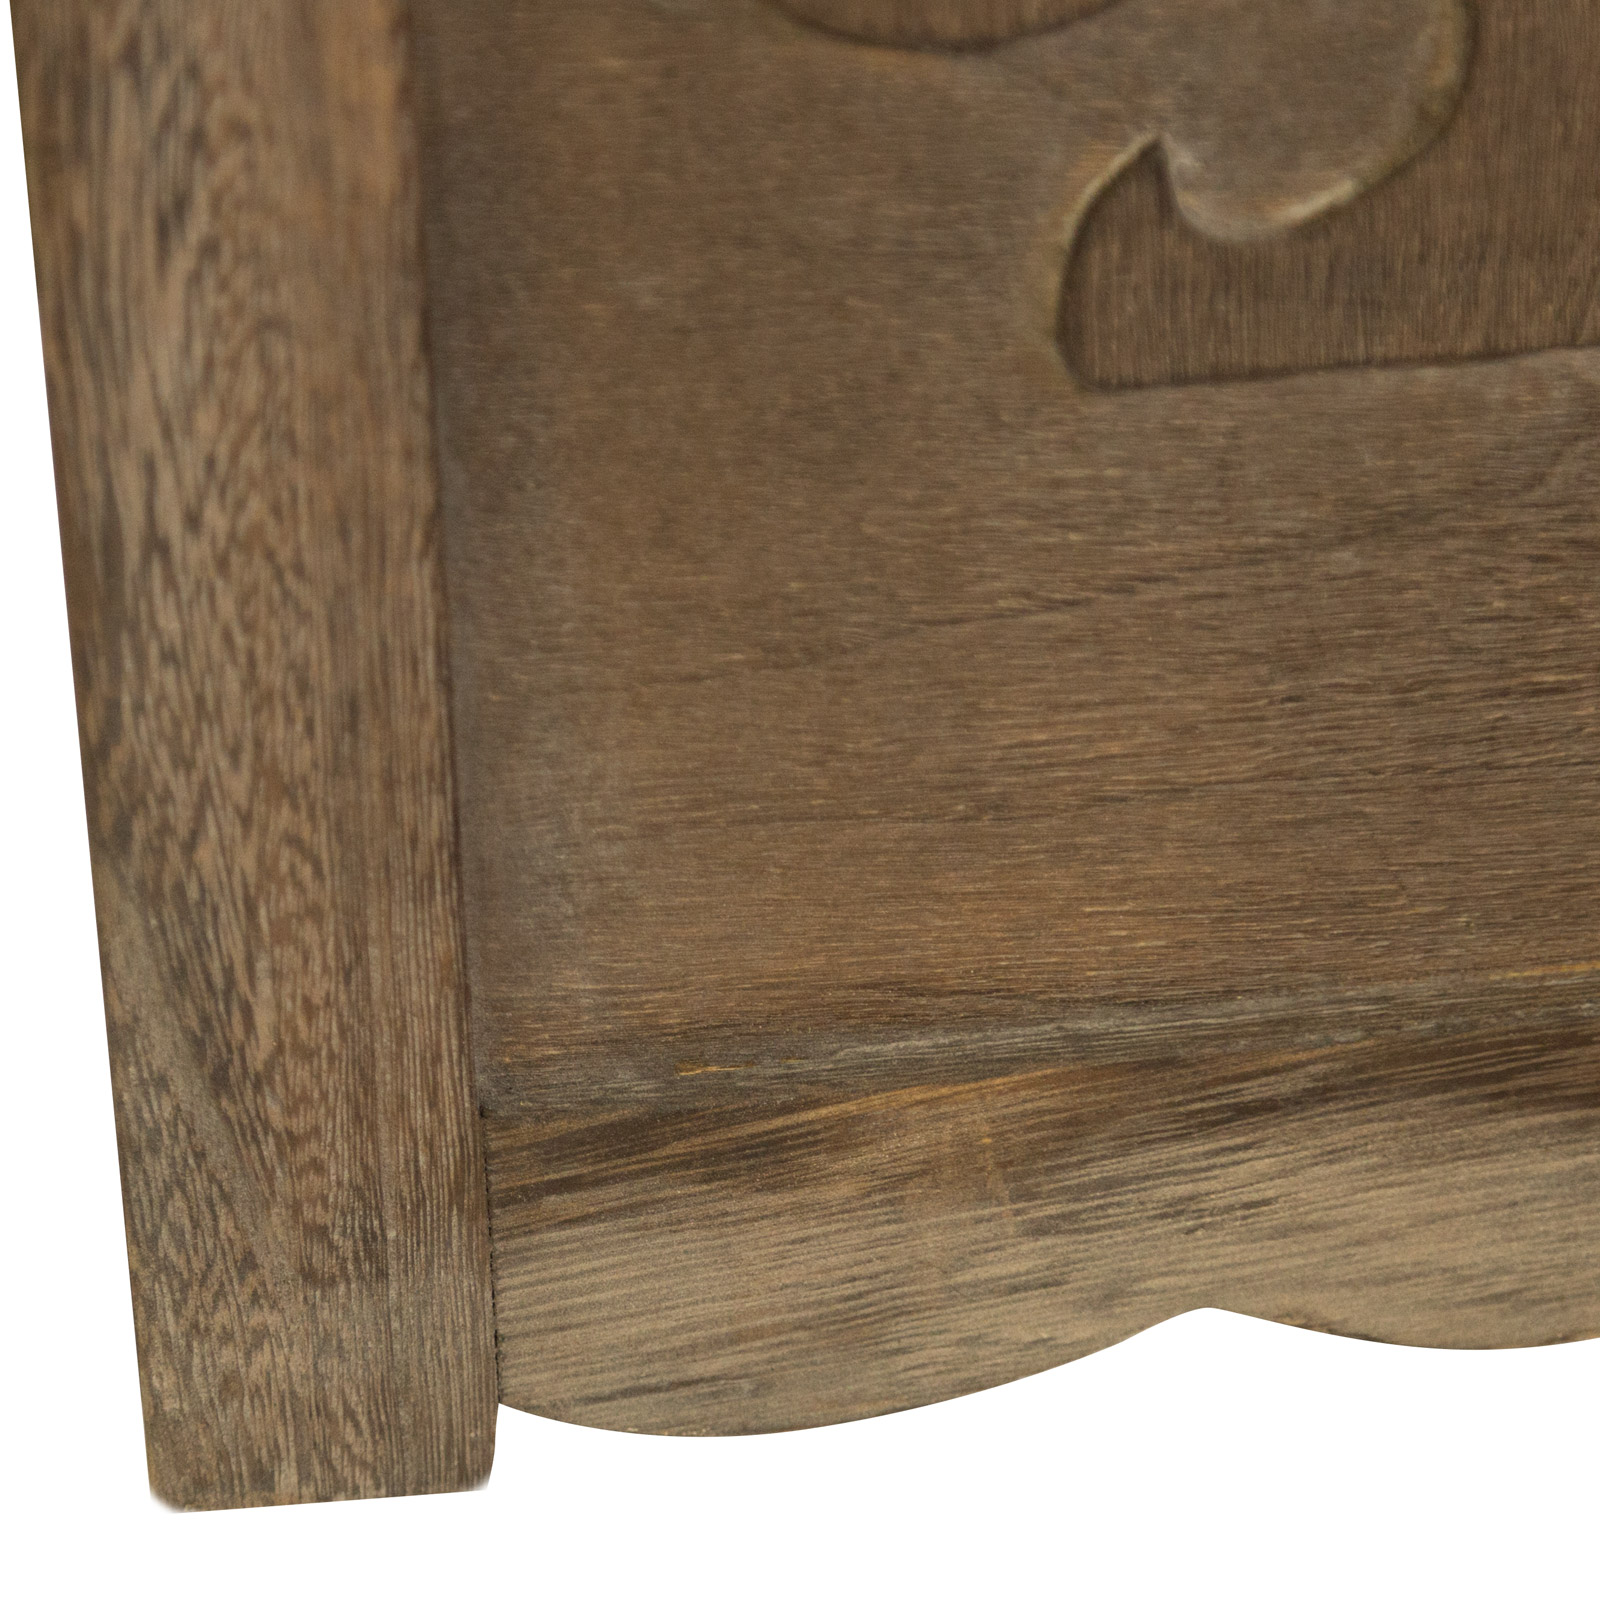 Paravent Raumteiler 4 teilig Holz Trennwand Sichtschutz Braun